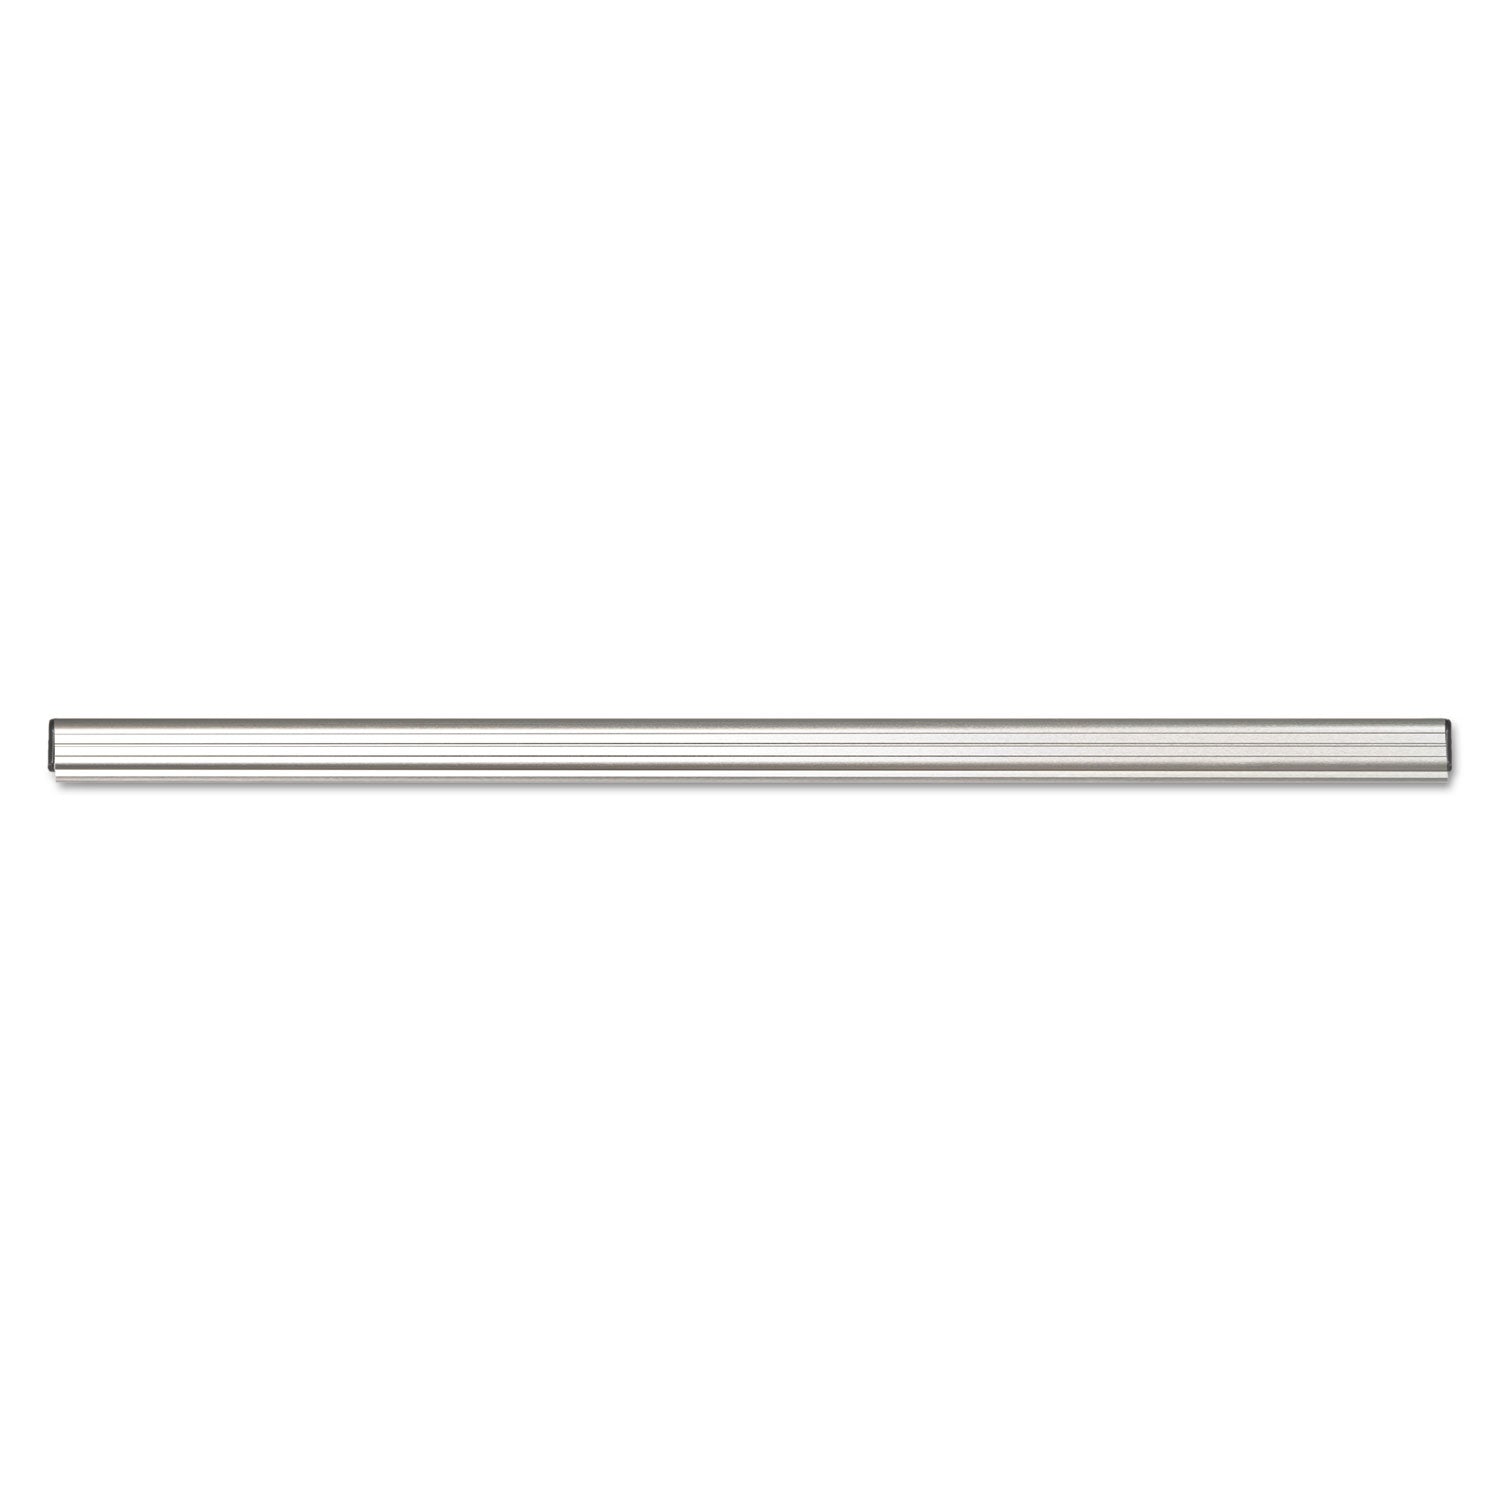 Grip-A-Strip Display Rail, 24 x 1.5, Aluminum Finish - 